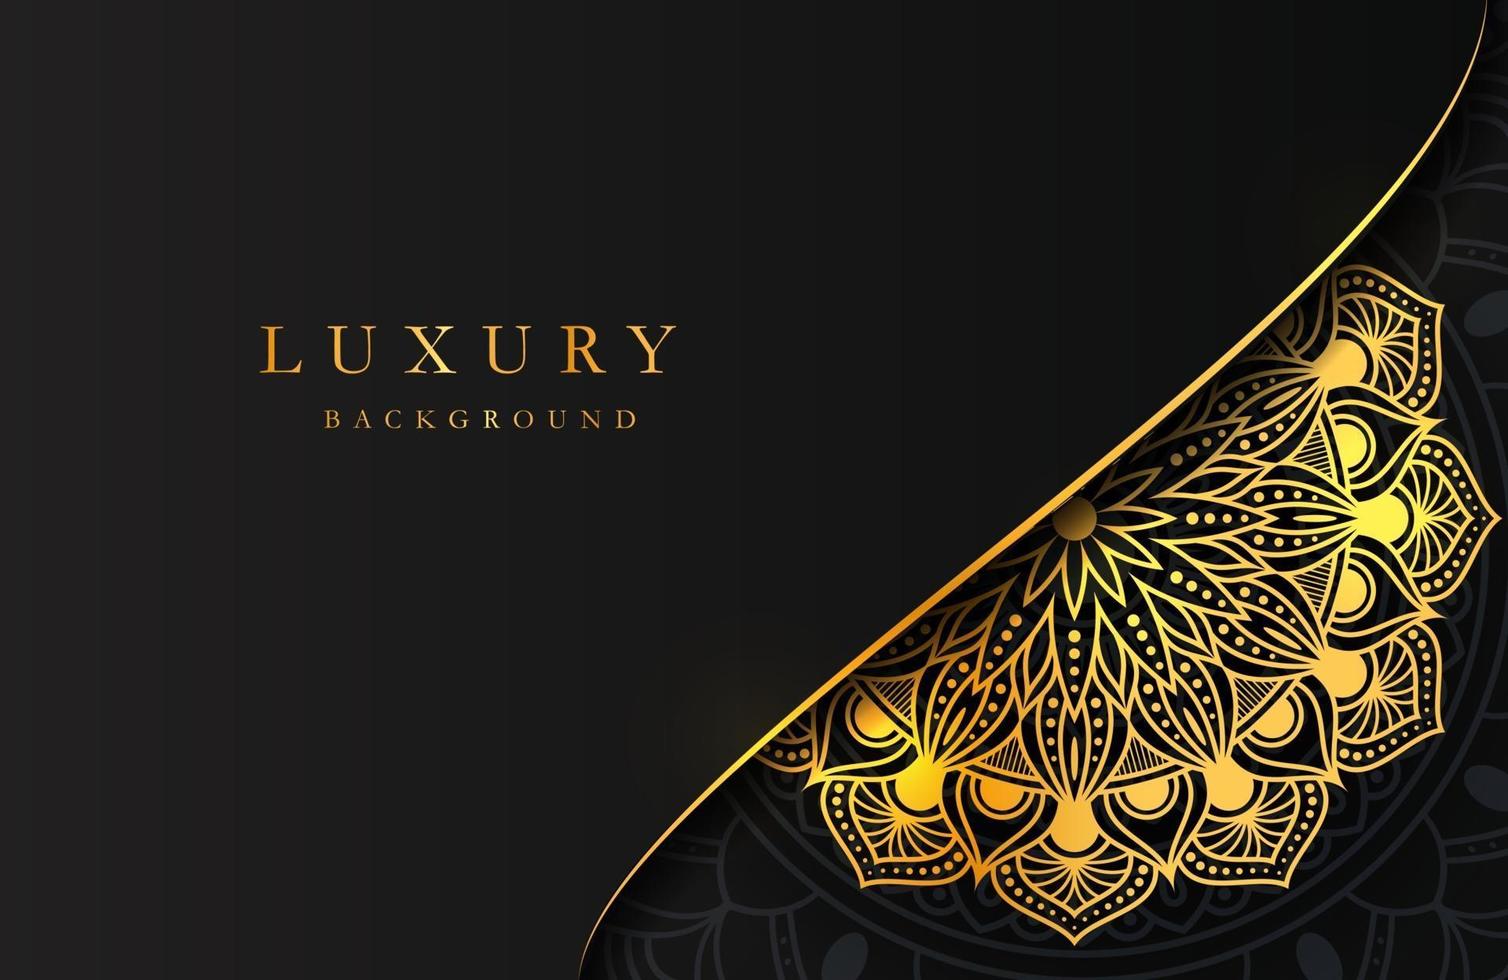 Luxushintergrund mit schimmernder islamischer Arabeskenverzierung des Goldes auf dunkler Oberfläche vektor